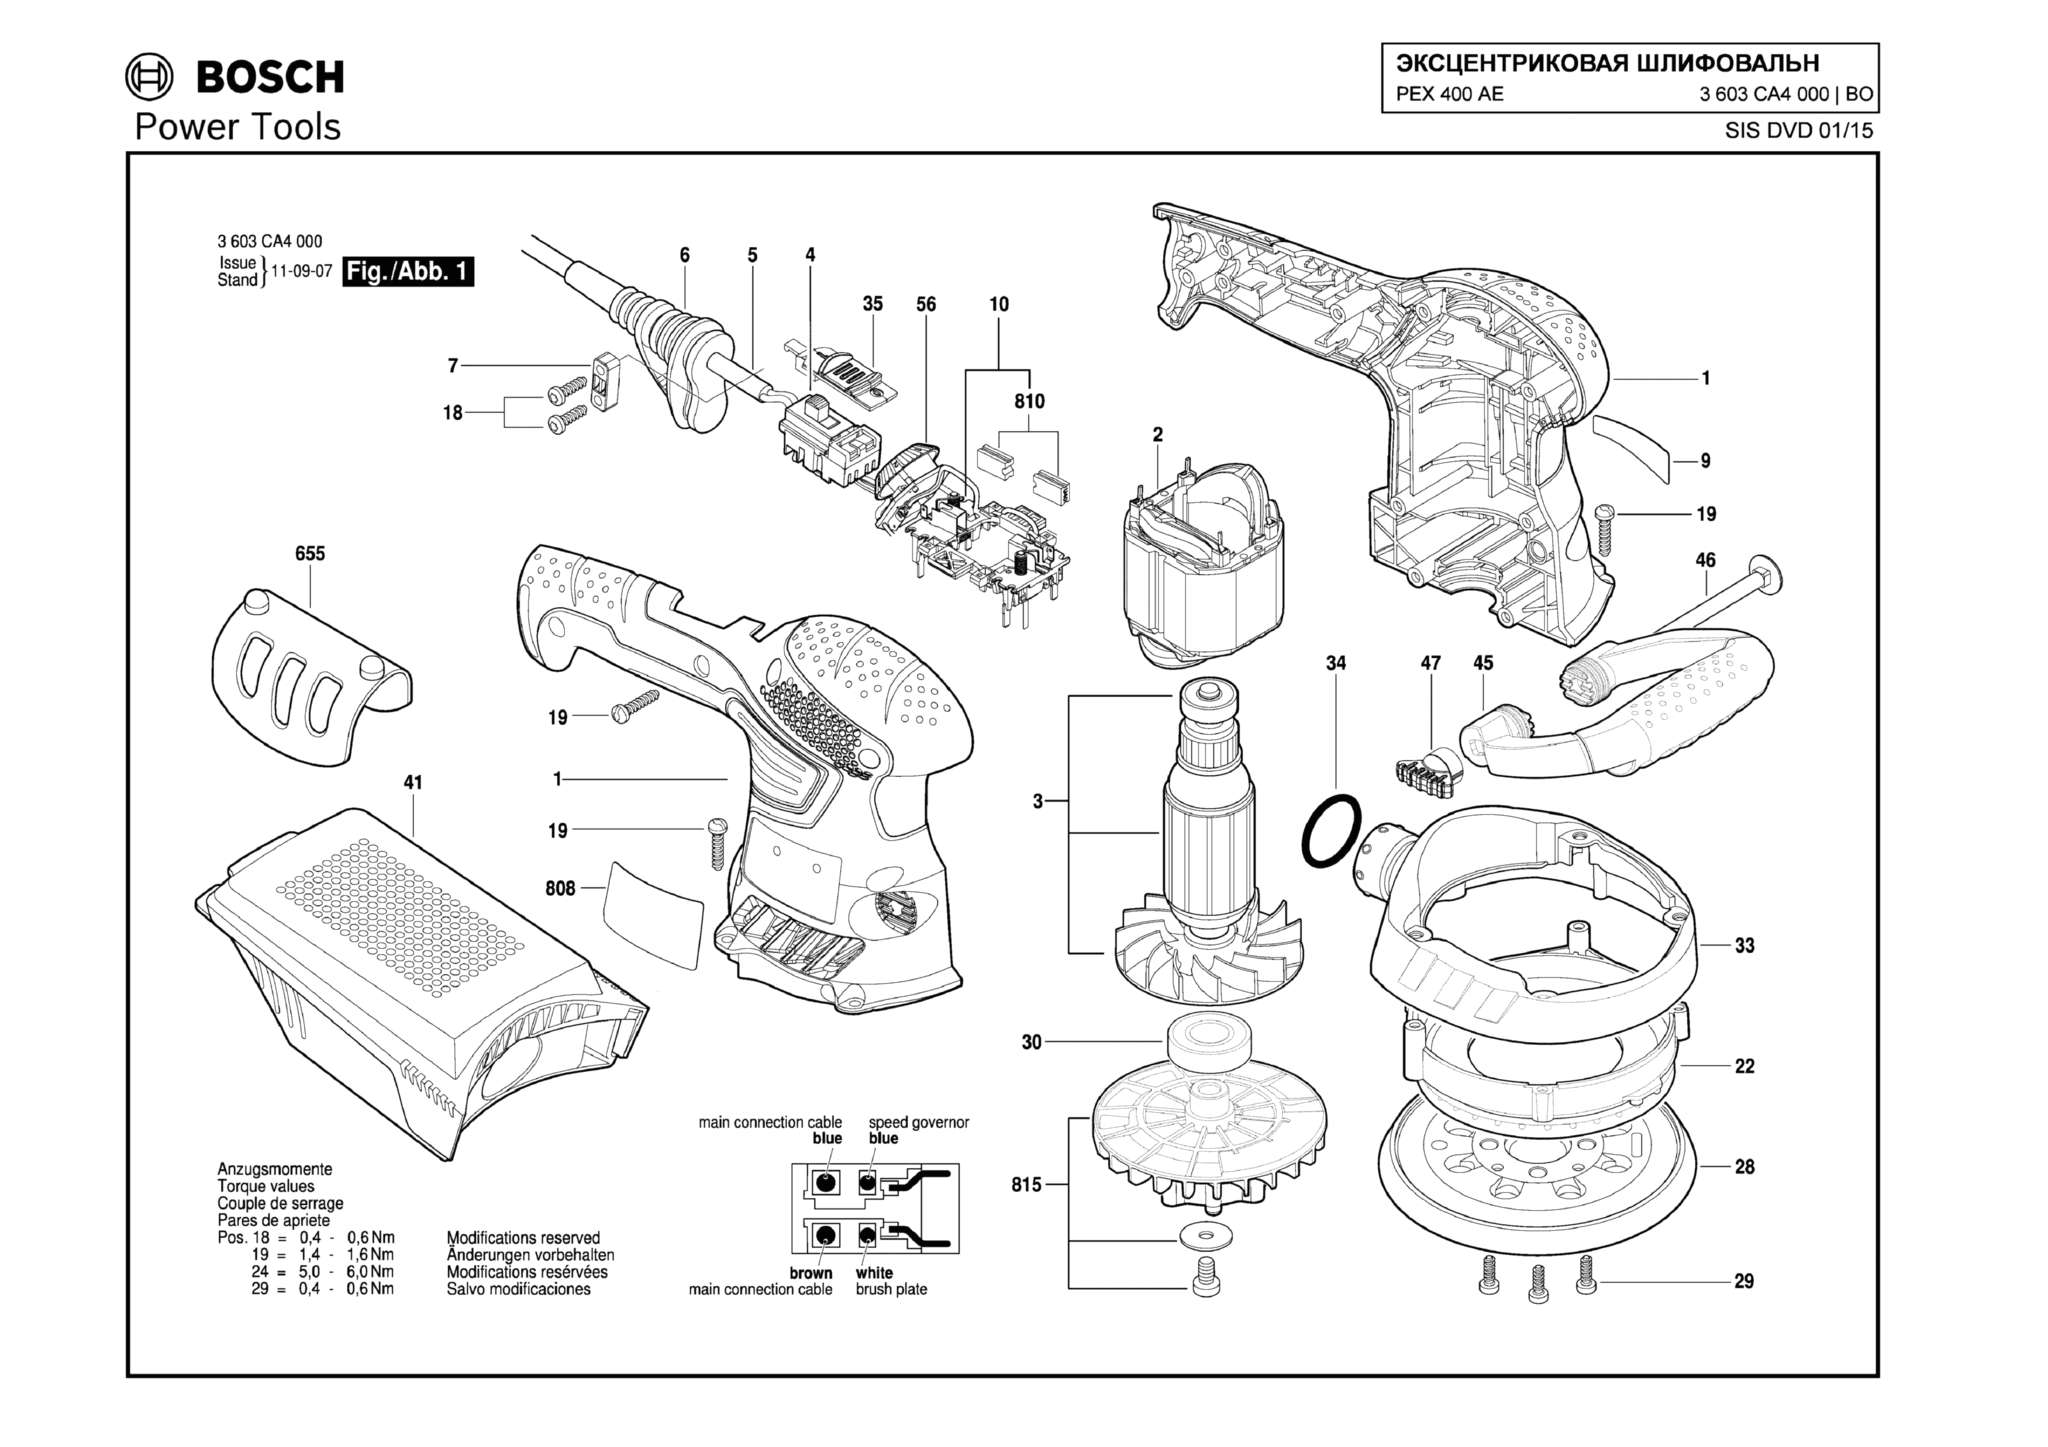 Запчасти, схема и деталировка Bosch PEX 400 AE (ТИП 3603CA4000)